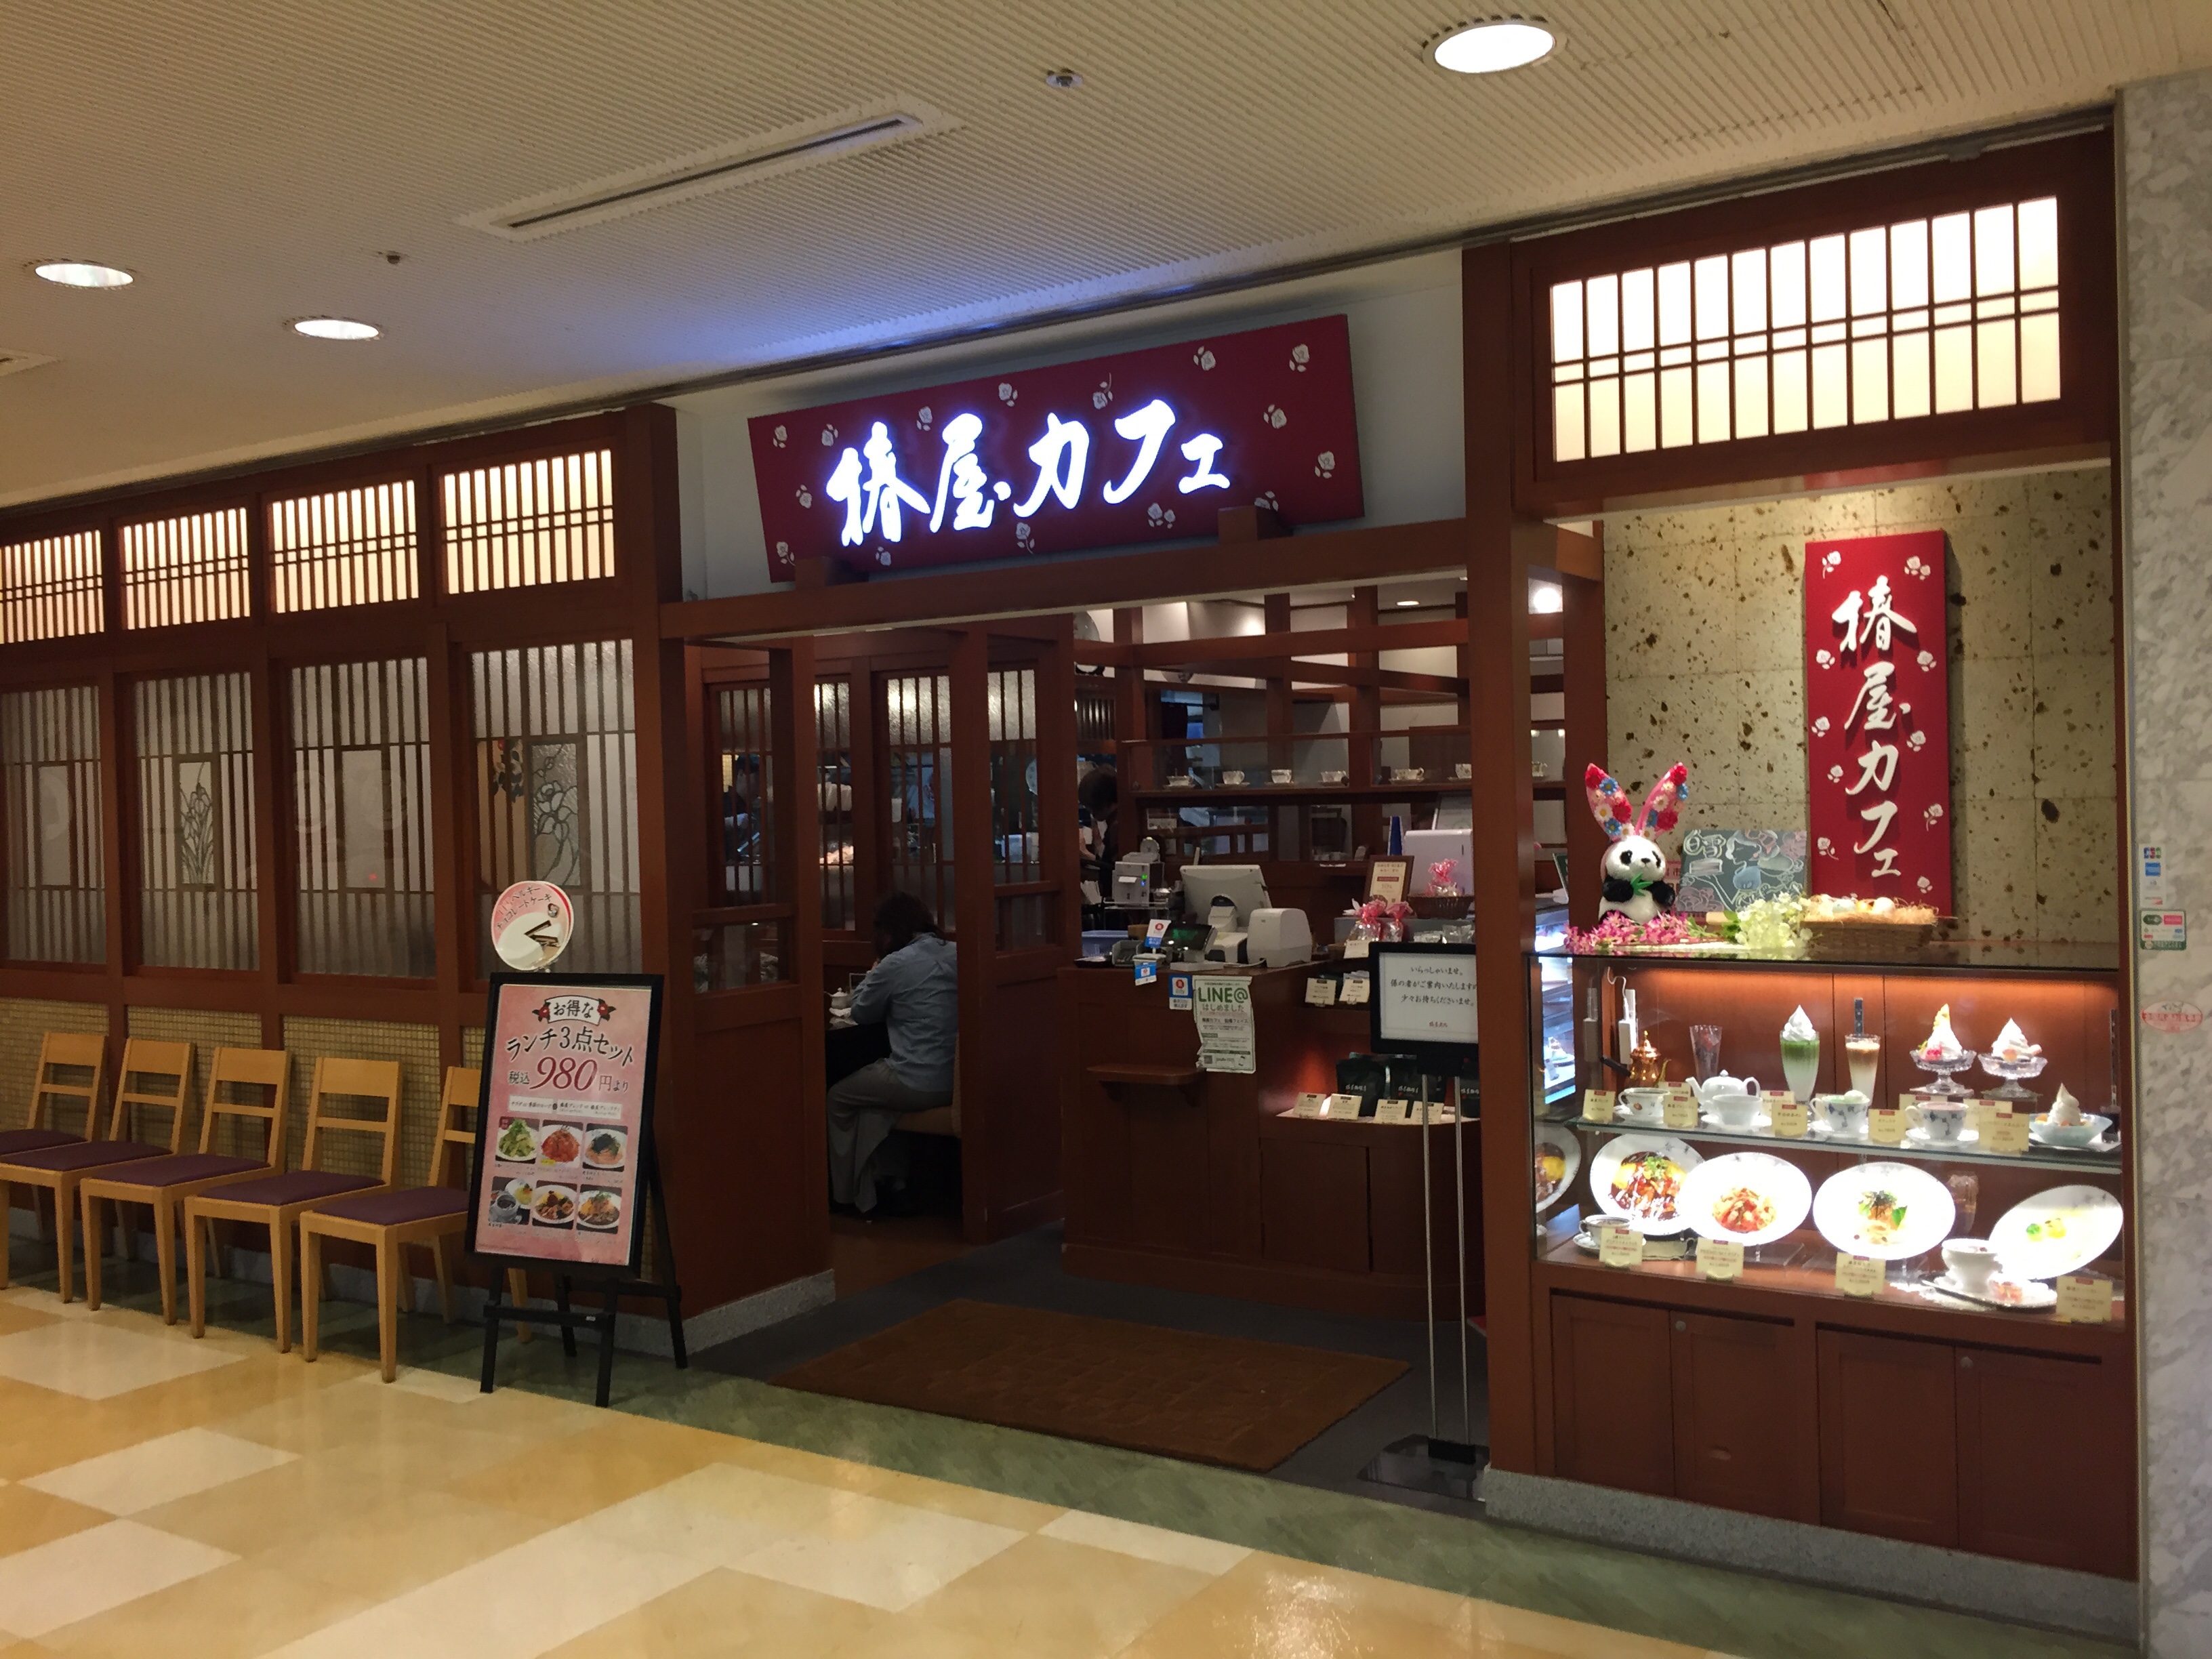 船橋駅 京成船橋駅 打ち合わせで使えるおすすめカフェ 喫茶店 地味型ノマドワーカーの作り方